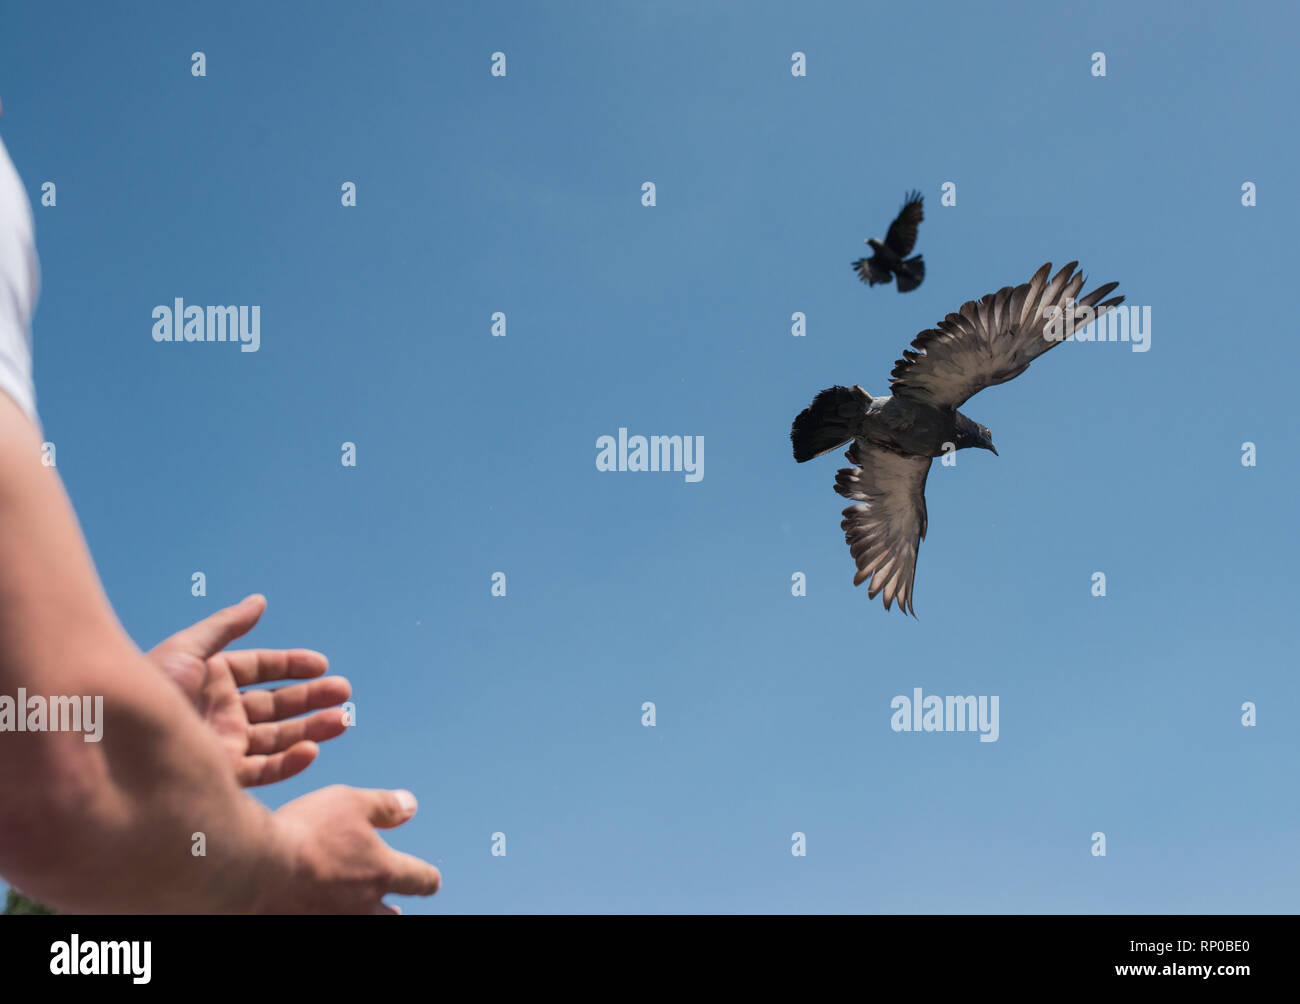 Manos macho soltando dos tórtolas o palomas en el cielo. imagen simbólica de la libertad, la liberación y la igualdad Foto de stock